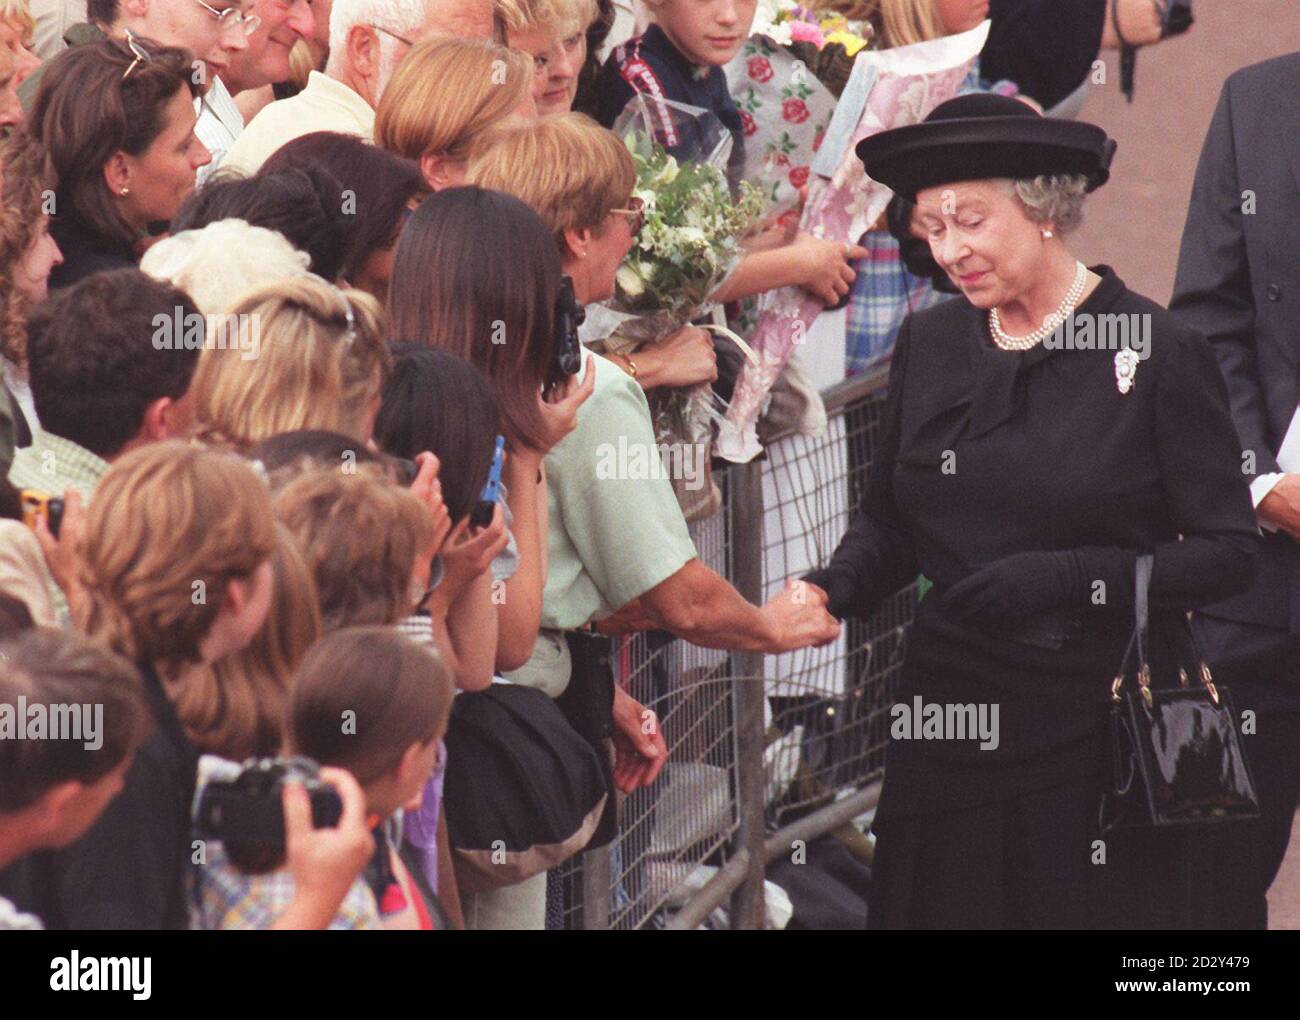 Vêtue de noir, la Reine rencontre la foule des amateurs de tournants devant le Palais de Buckingham cet après-midi, après être arrivée dans la ville pour les funérailles de son ancienne belle-fille, Diana, princesse de Galles, demain matin à l'abbaye de Westminster. Photo de John Giles/PA Banque D'Images